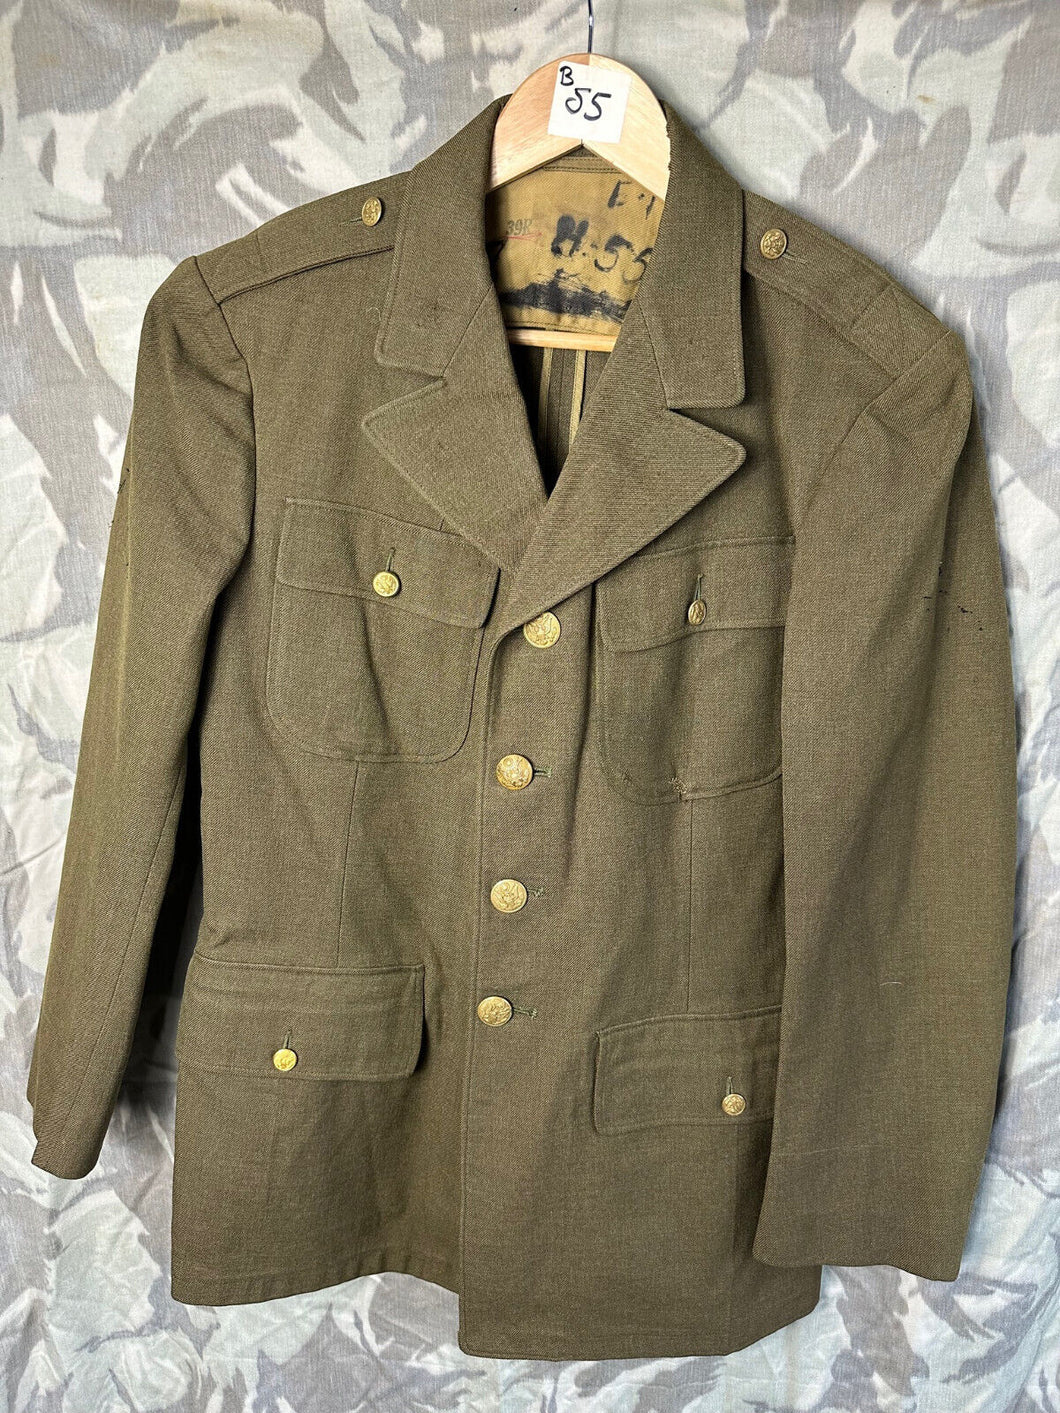 Original US Army WW2 Class A Uniform Jacket - 39